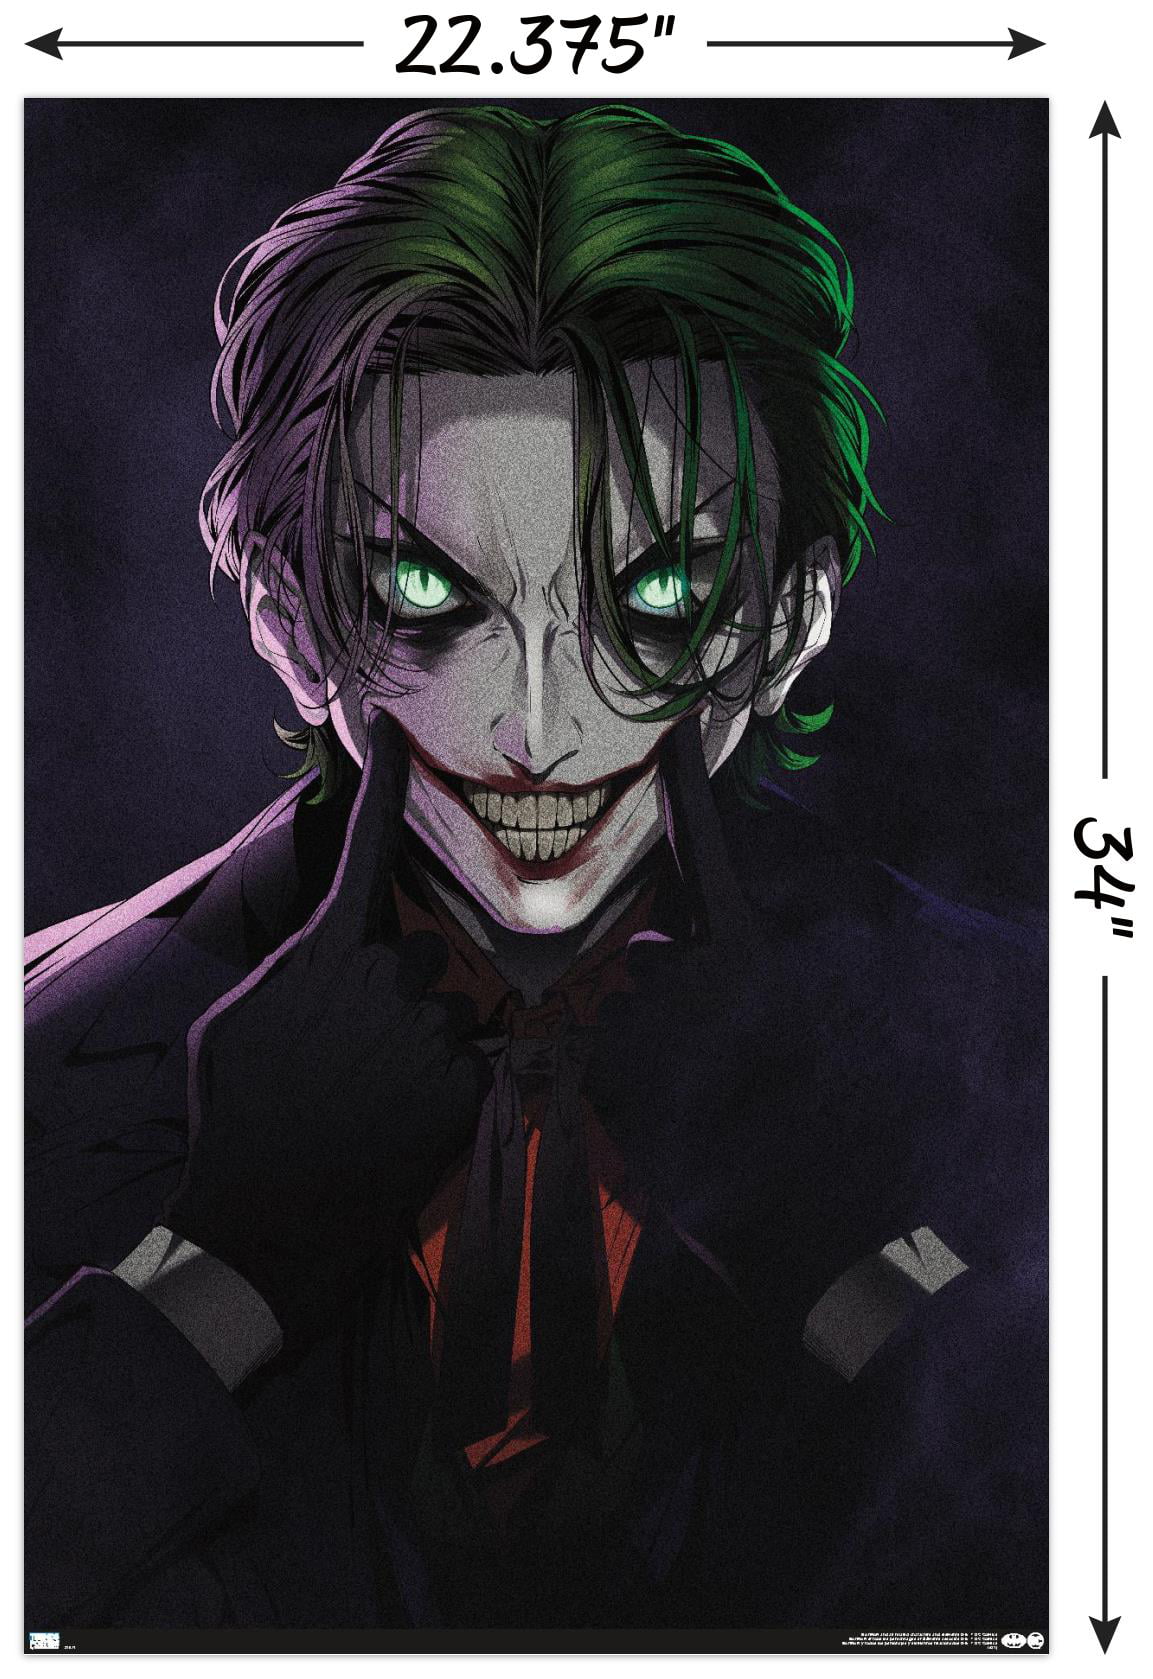 DC Comics - The Joker Anime - Smile Wall Poster, 